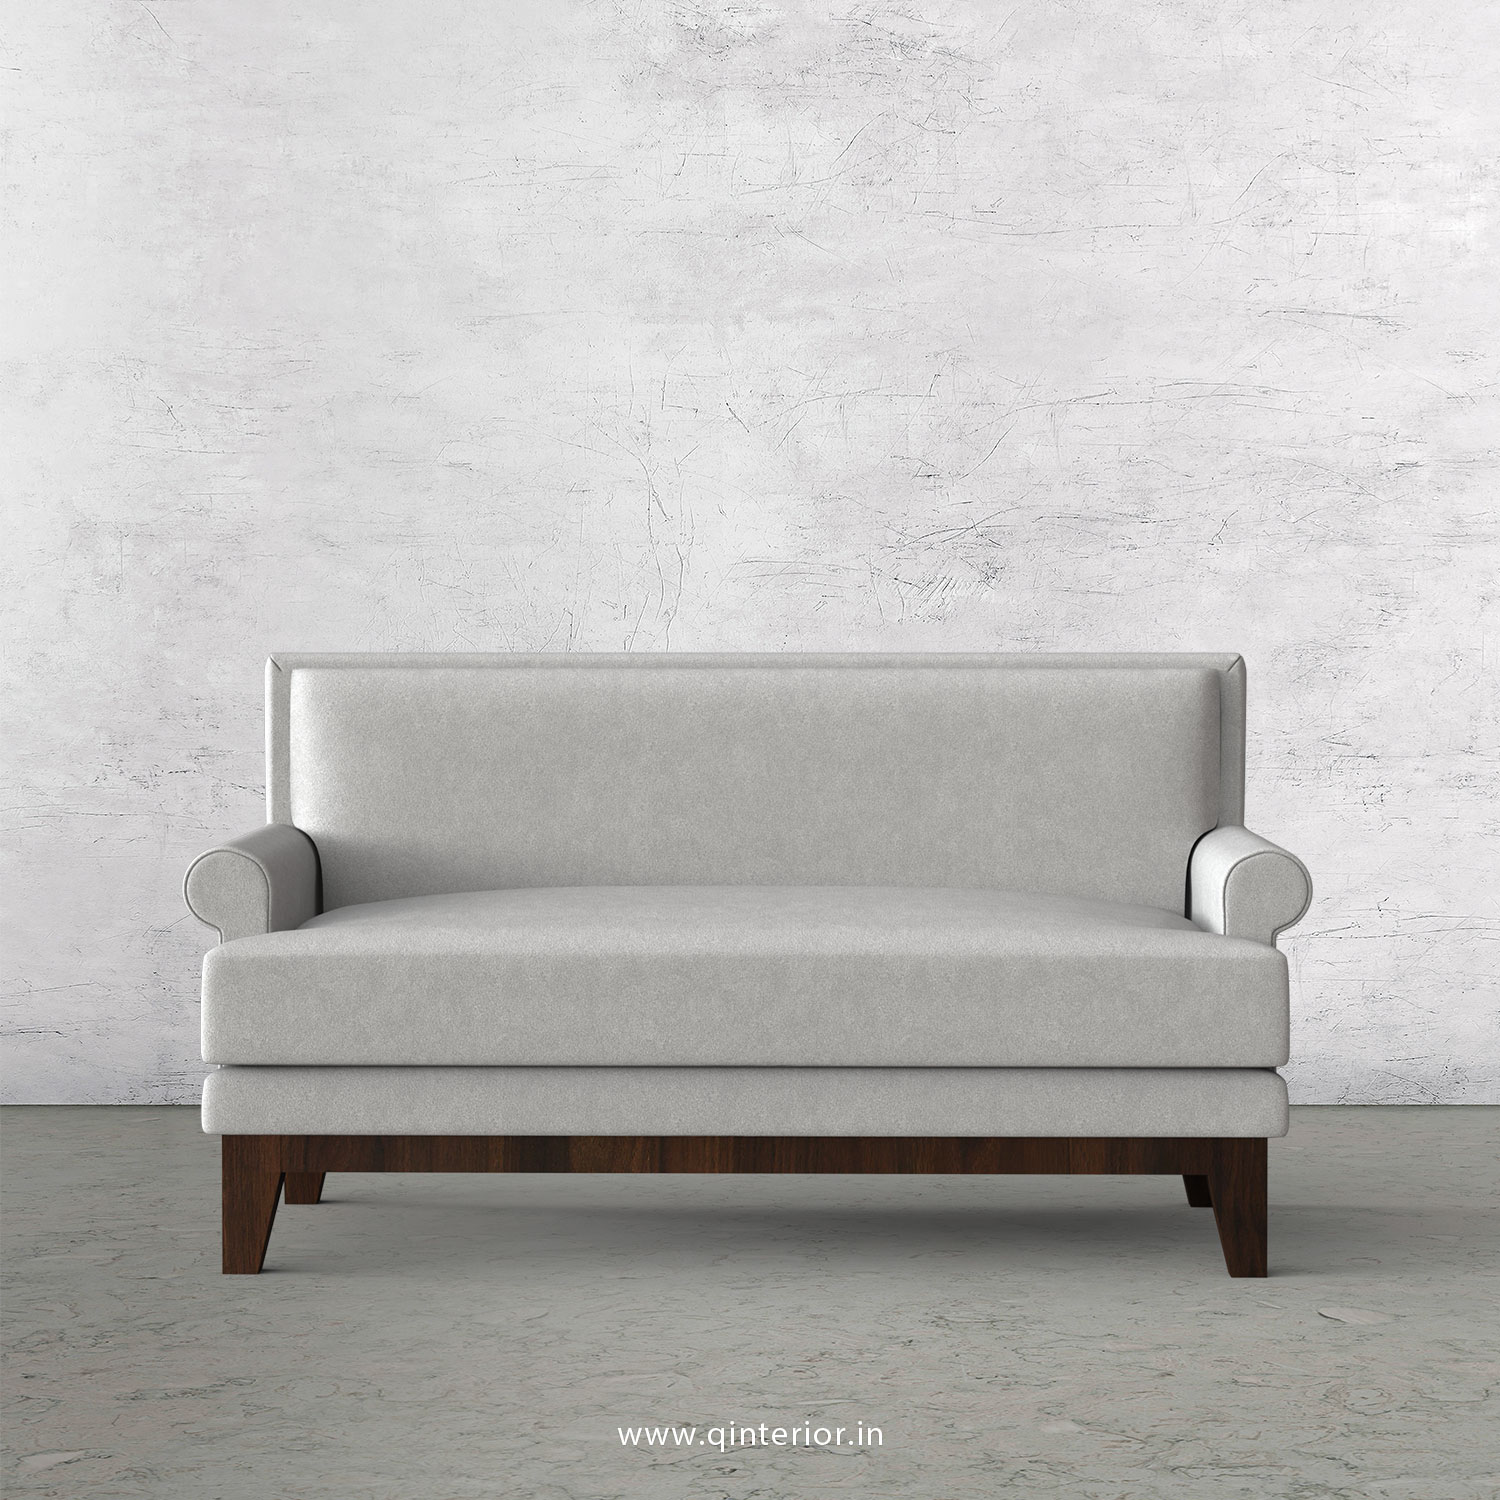 Aviana 2 Seater Sofa in Velvet Fabric - SFA001 VL06